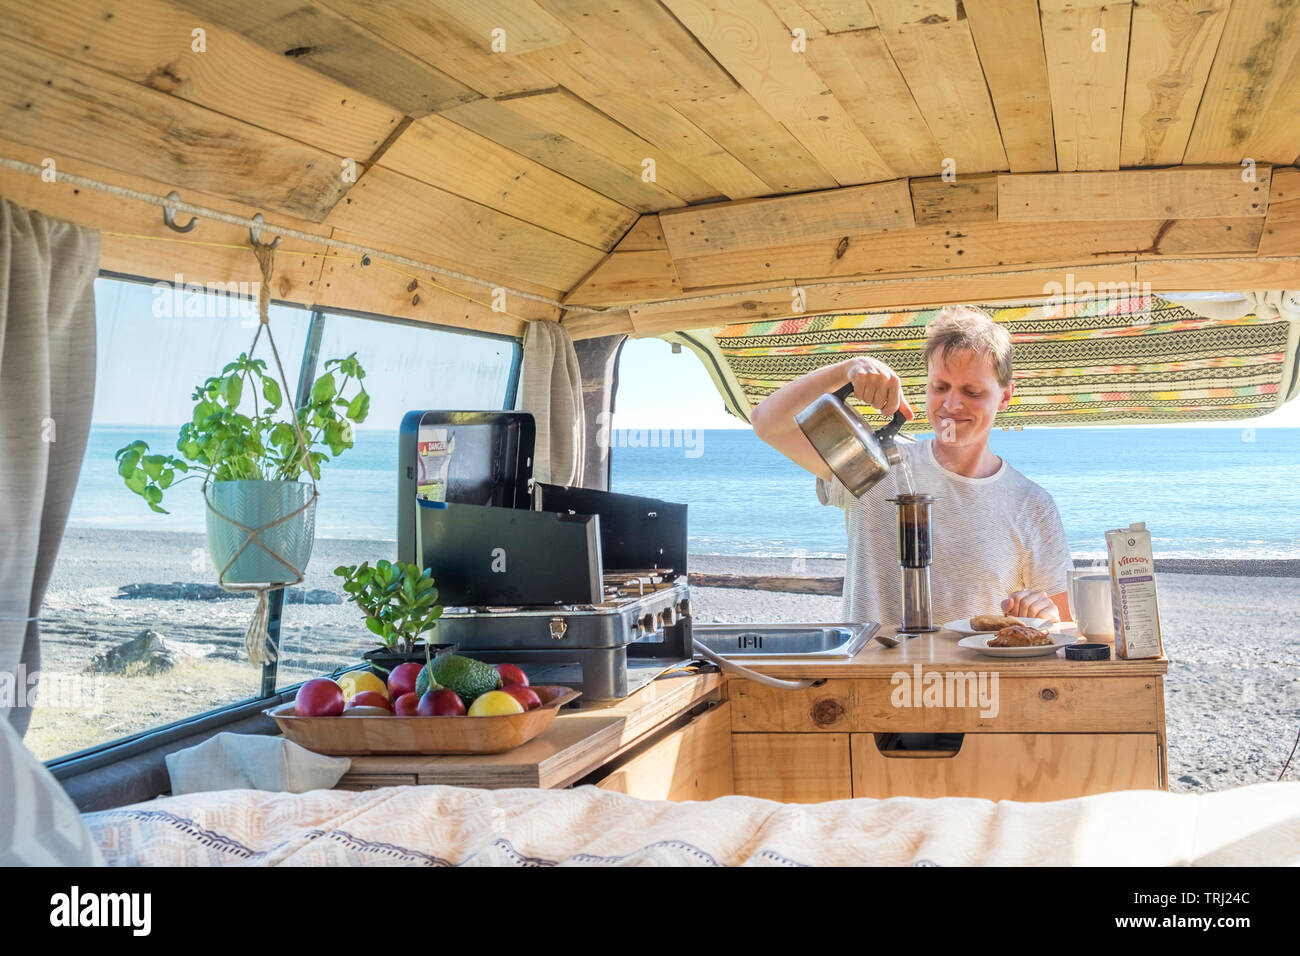 Un homme utilise un aeropress à faire le café dans un camping-car en Nouvelle-Zélande Banque D'Images